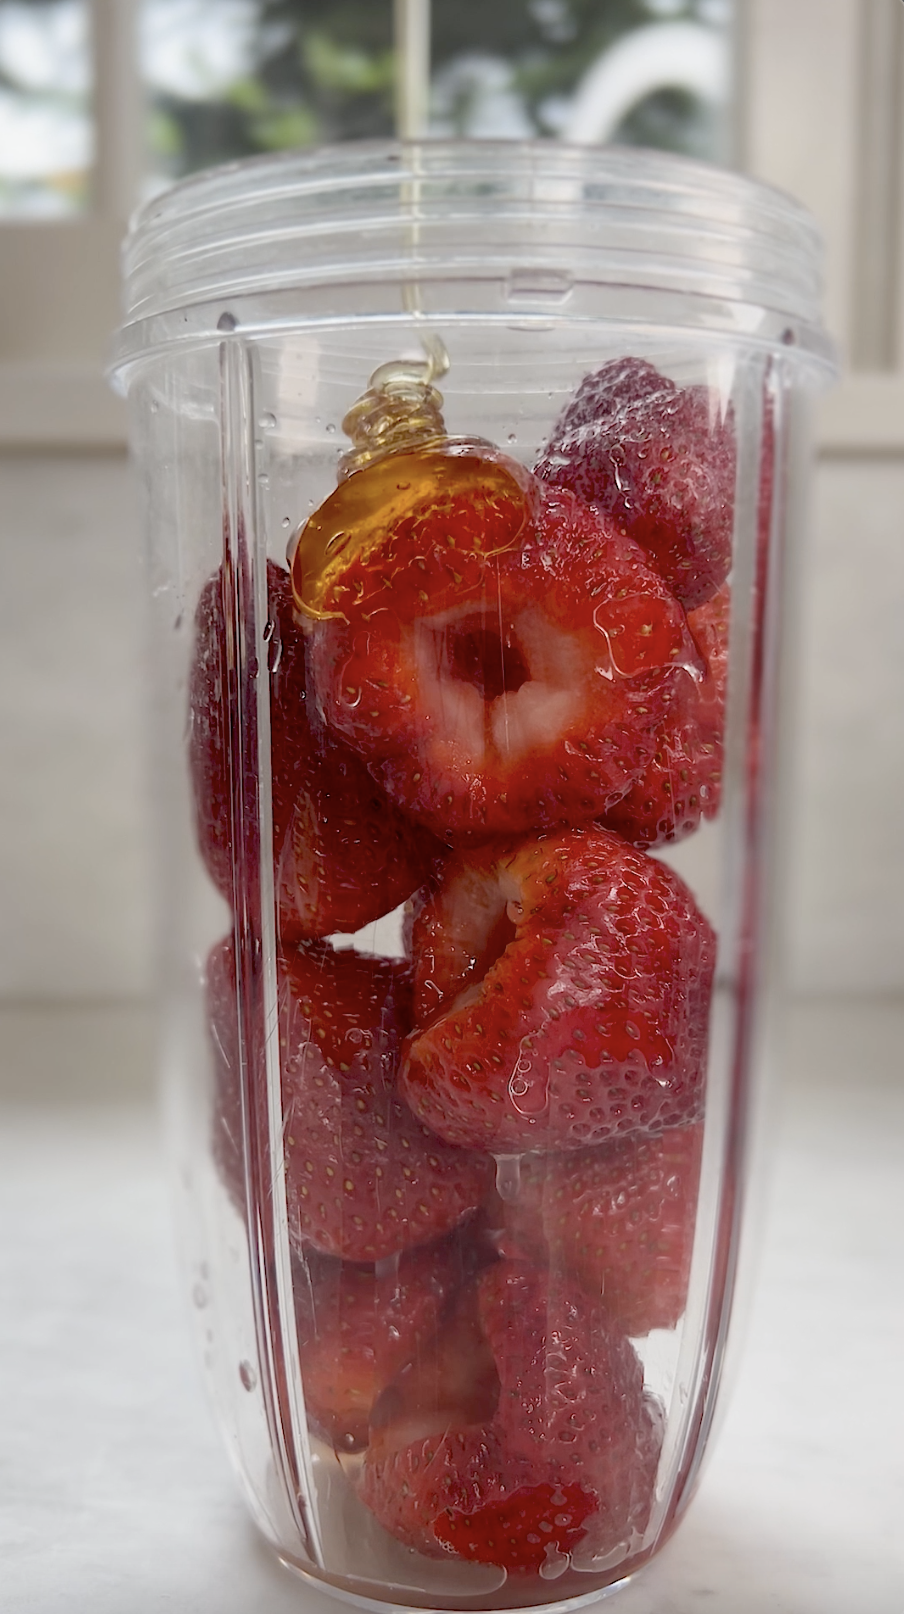 Strawberries, lemon juice and honey in small blender.